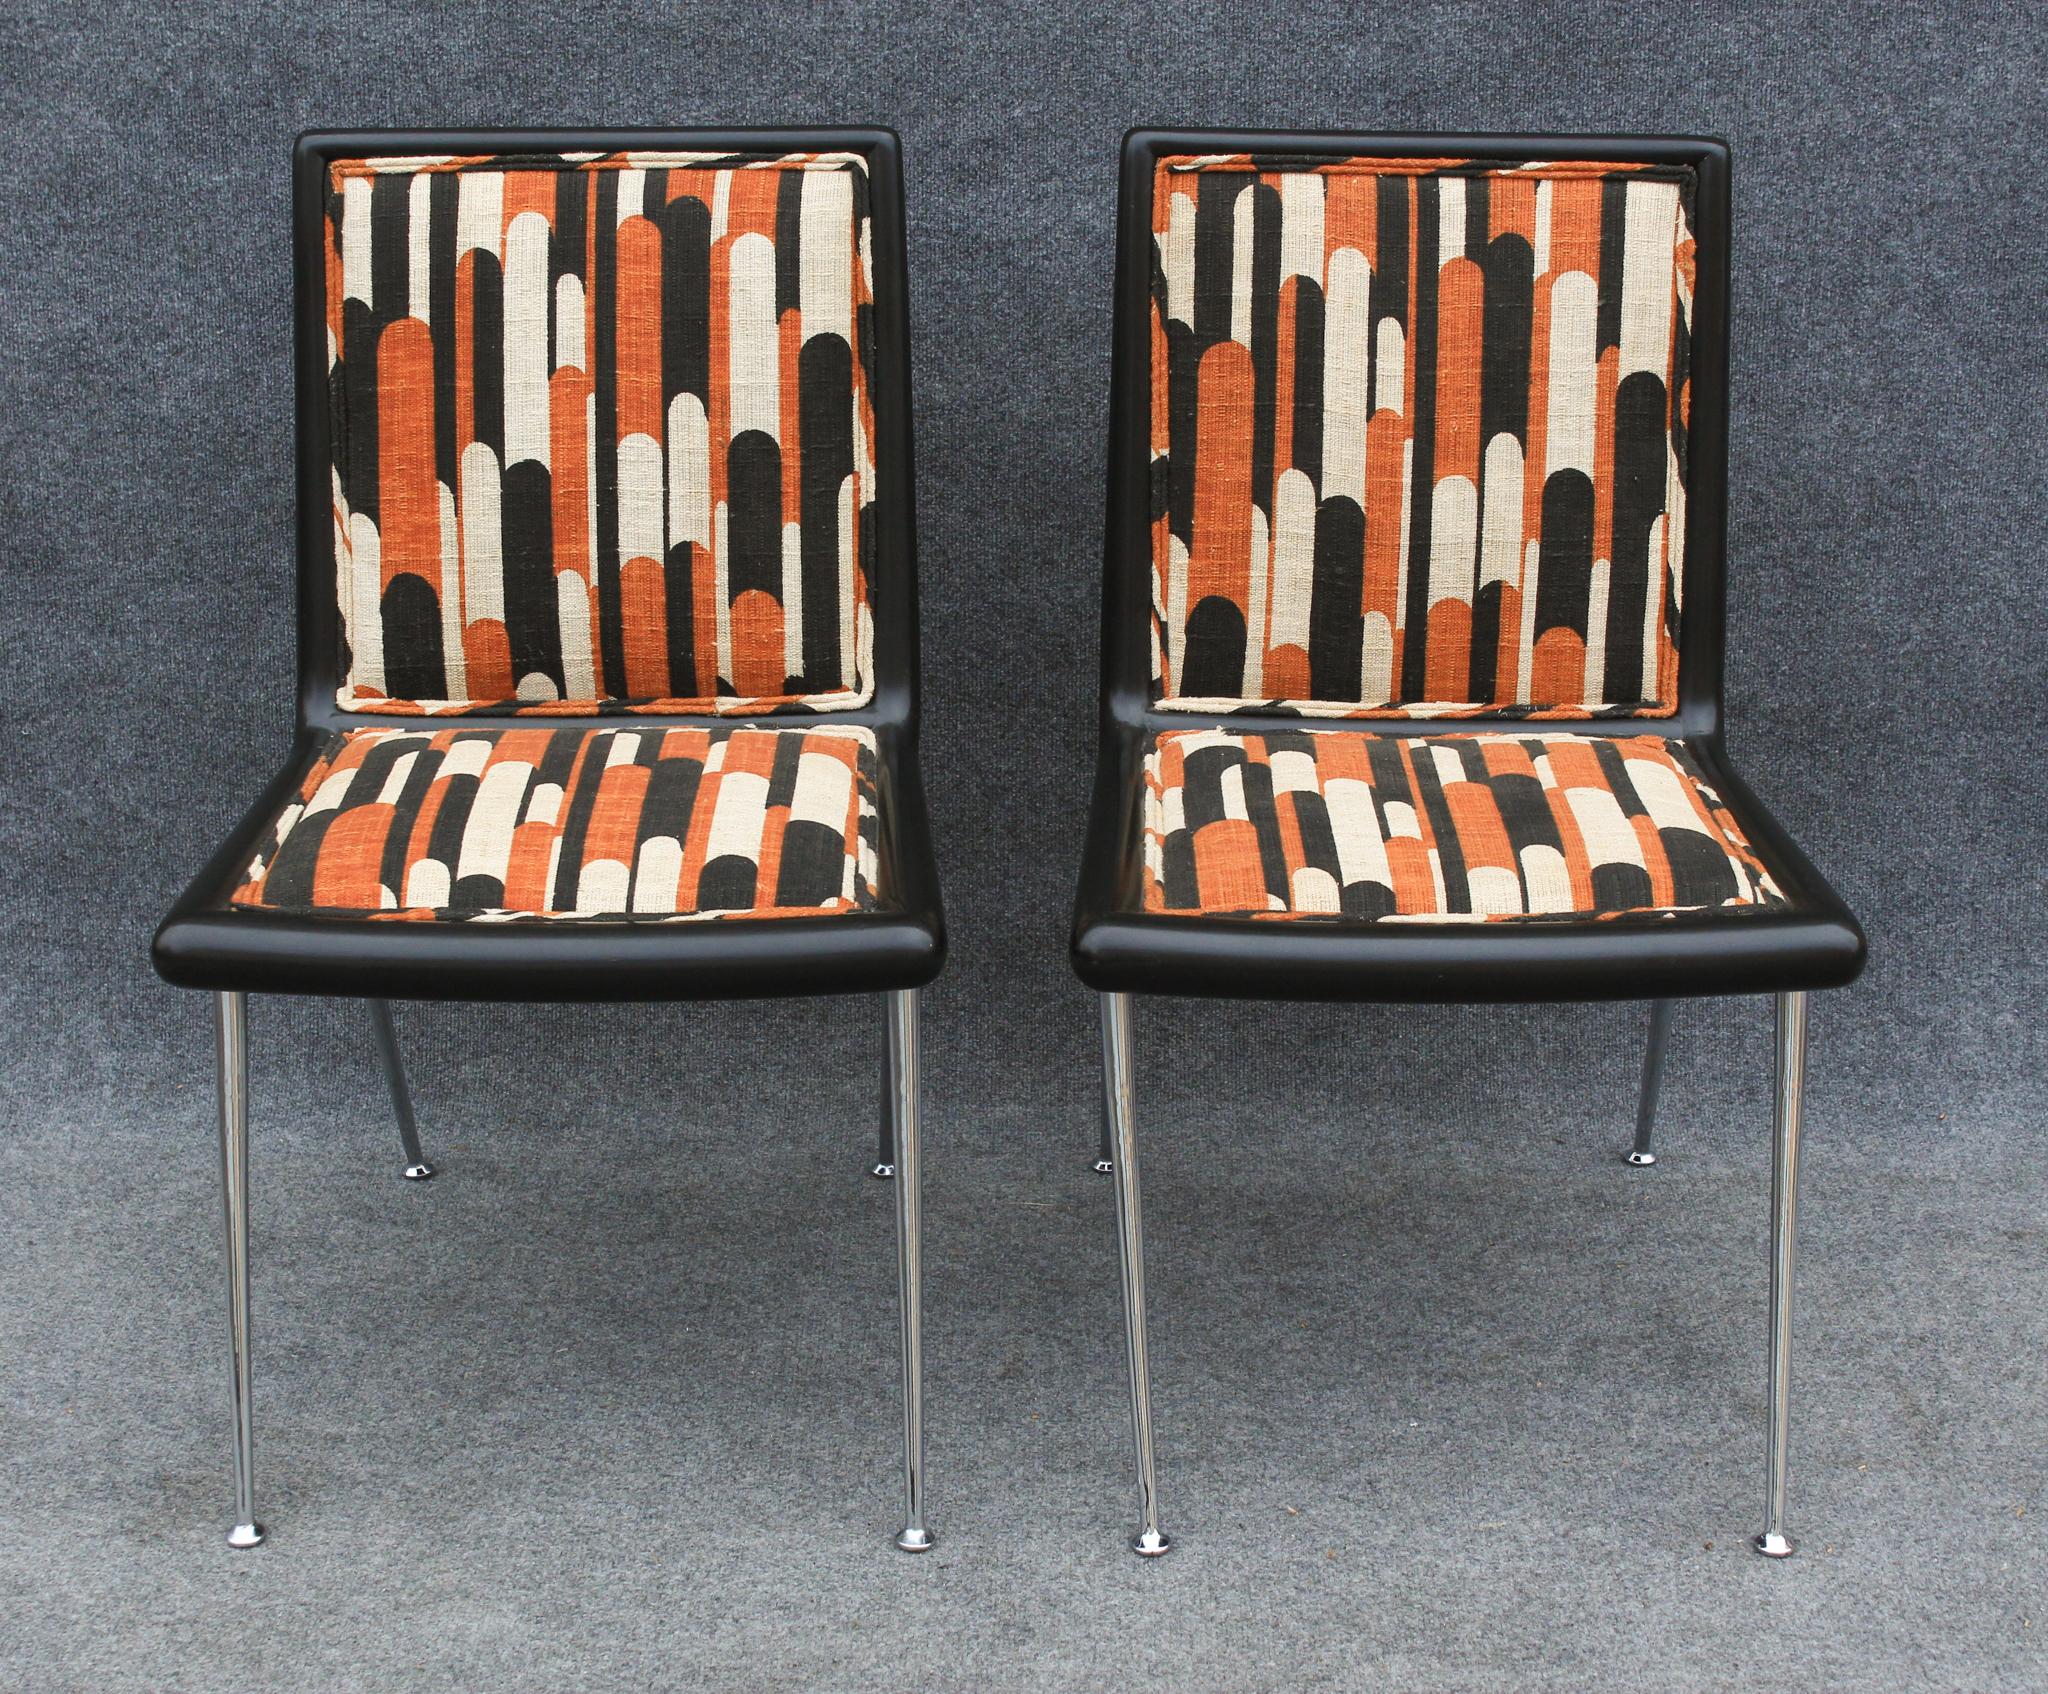 Entworfen von T.H. Diese Stühle wurden in den 1960er Jahren von Robsjohn Gibbings entworfen und waren Teil einer langjährigen Partnerschaft mit Widdicomb. Von den vielen erfolgreichen Stücken, die sie herstellten, gehören diese zu den seltensten,